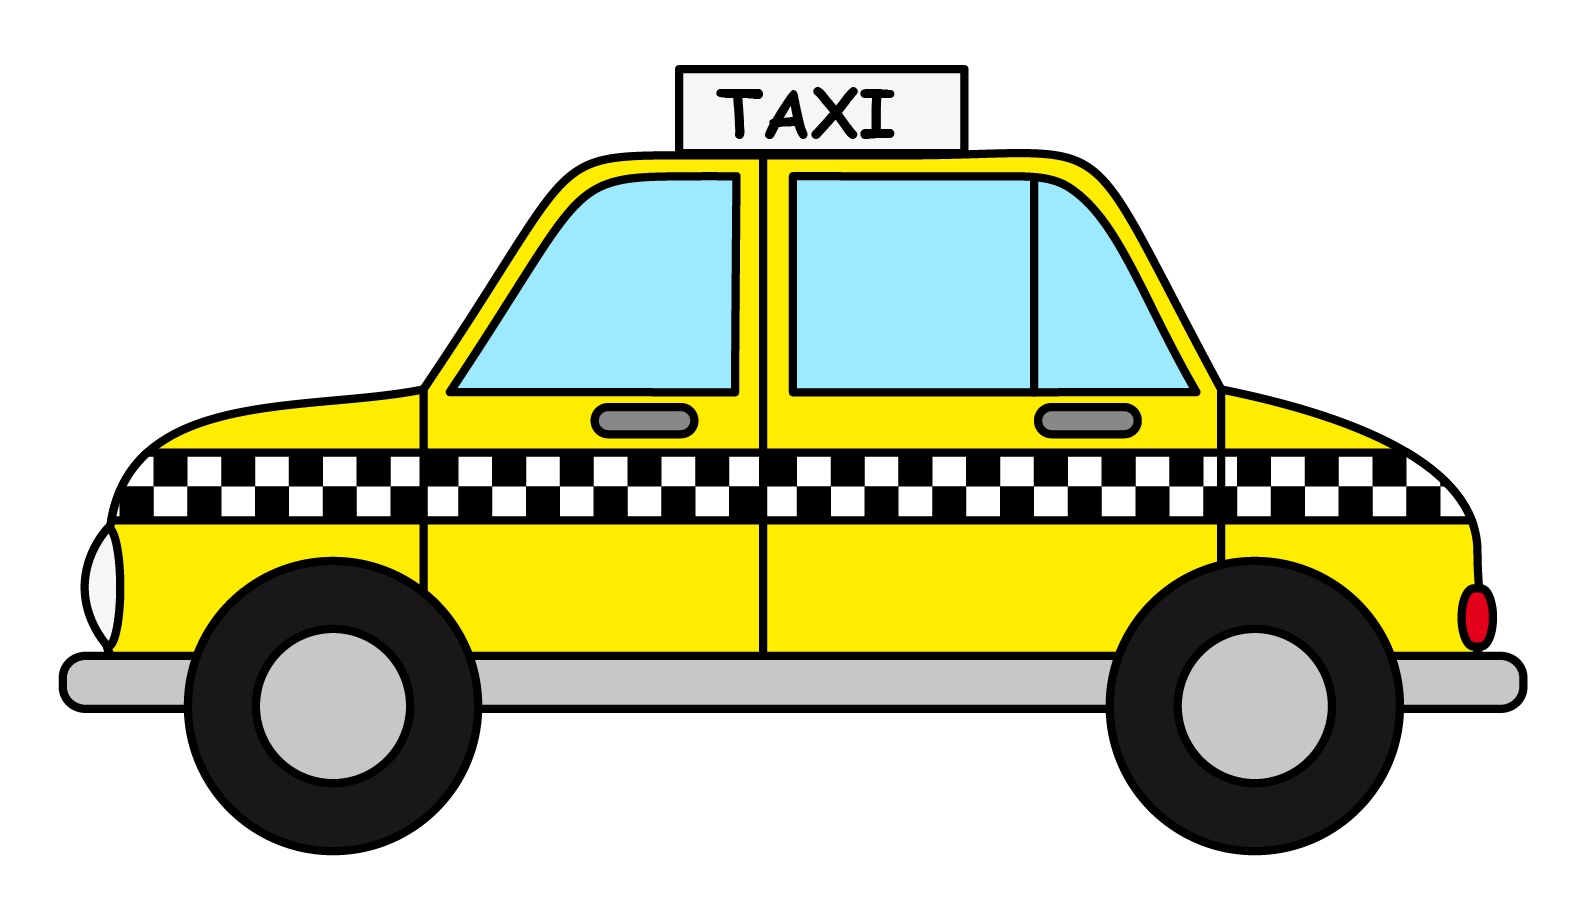 Cab clipart: cartoon taxi cab clip art